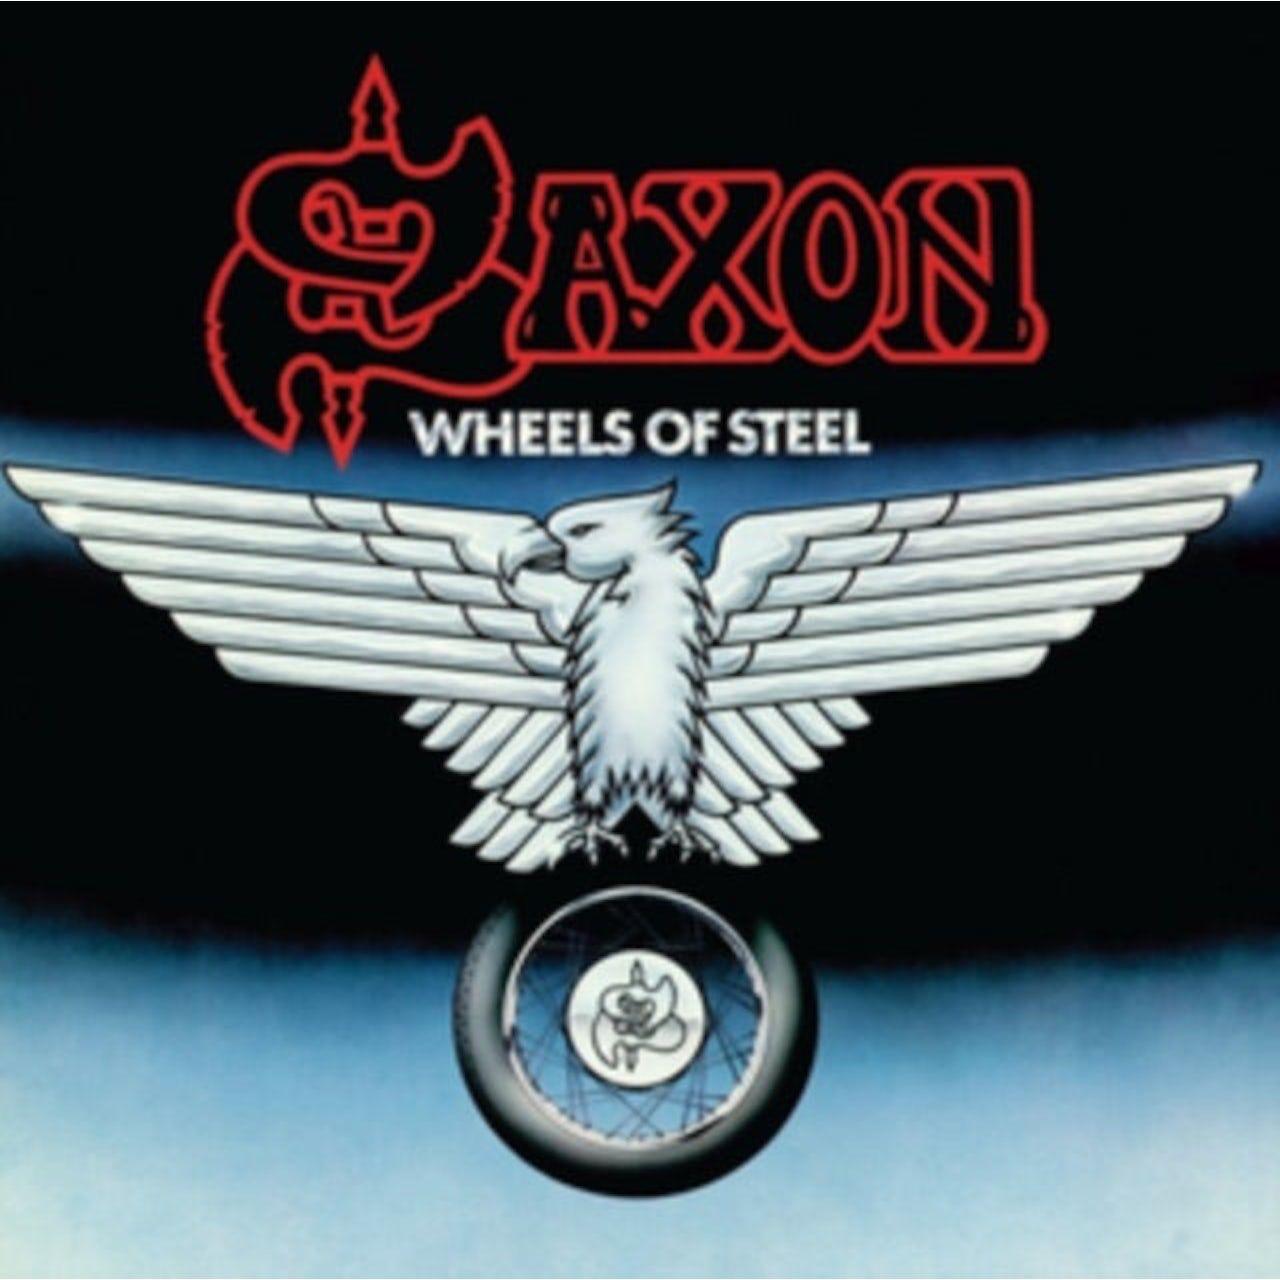 saxon виниловая пластинка saxon dogs of war tour 1995 4050538347883, Виниловая пластинка Saxon, Wheels Of Steel (coloured)